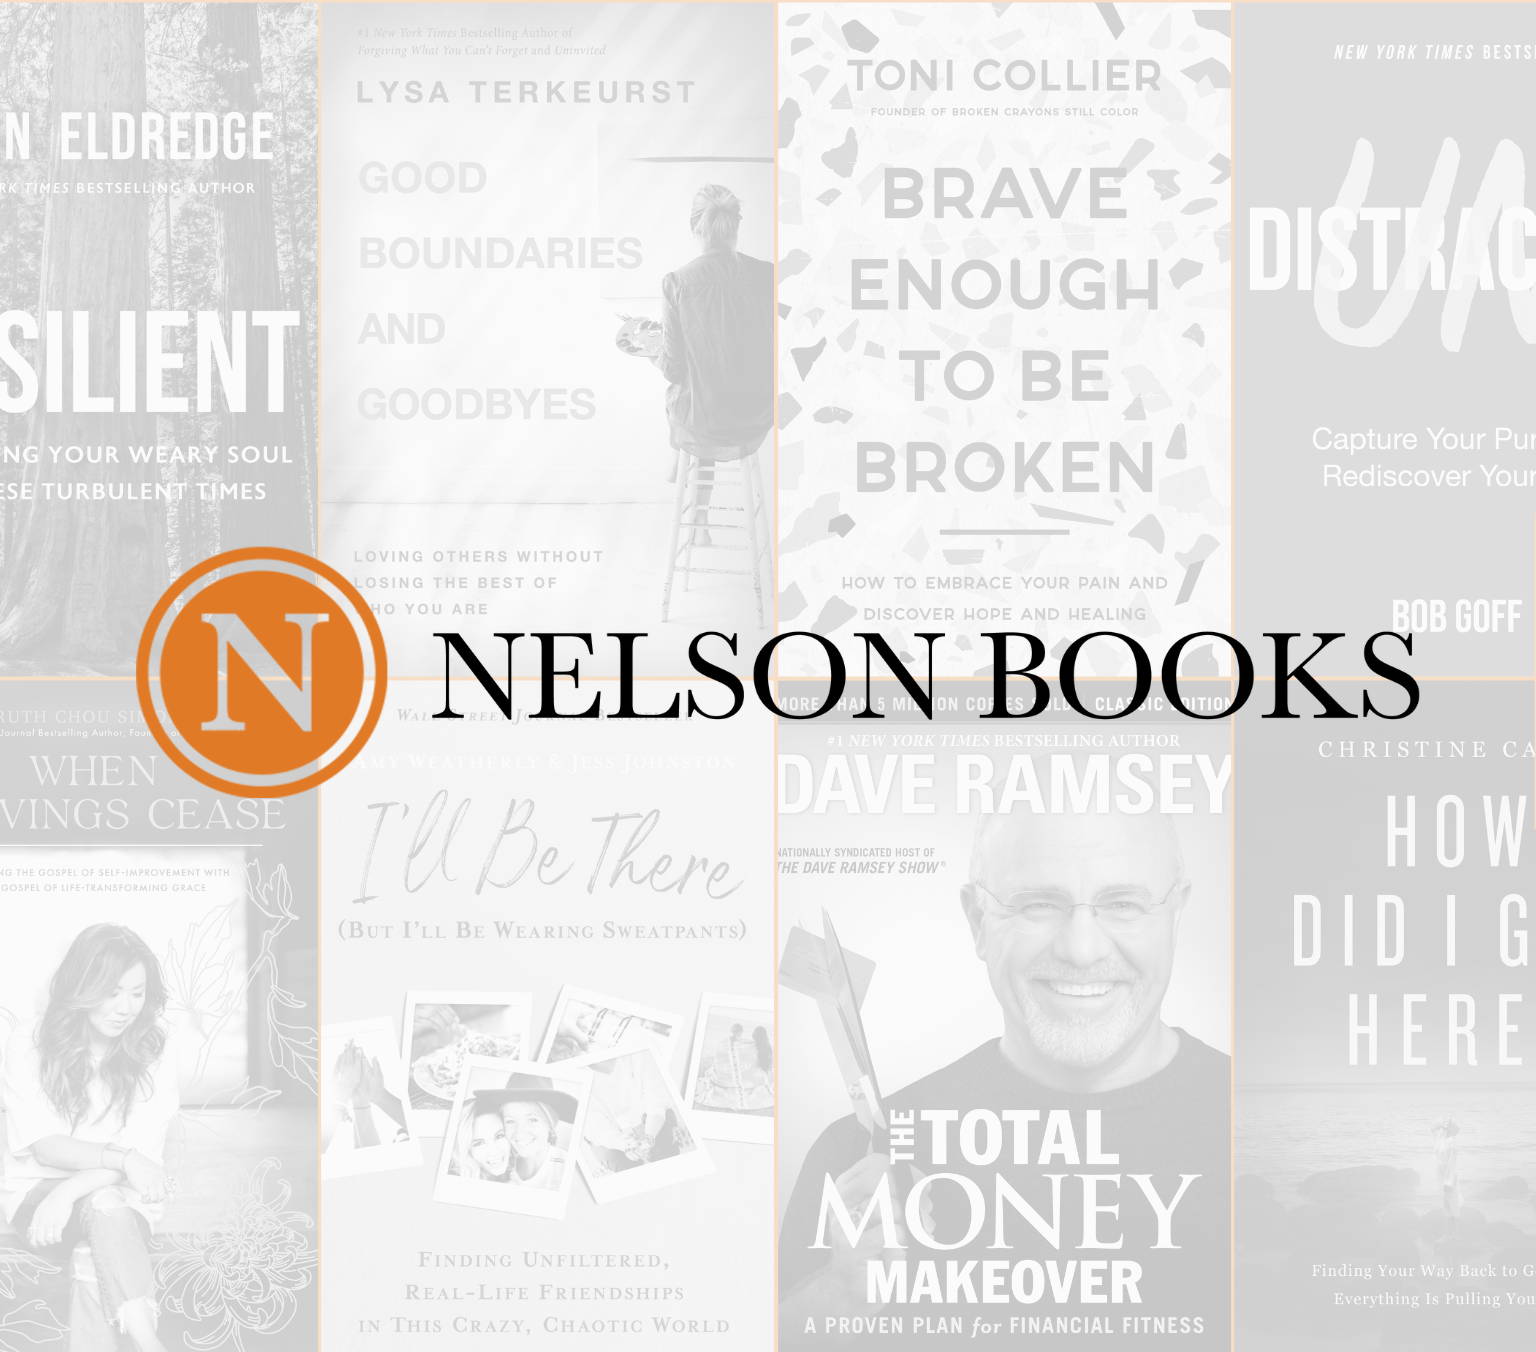 Nelson Books Relationships & Family